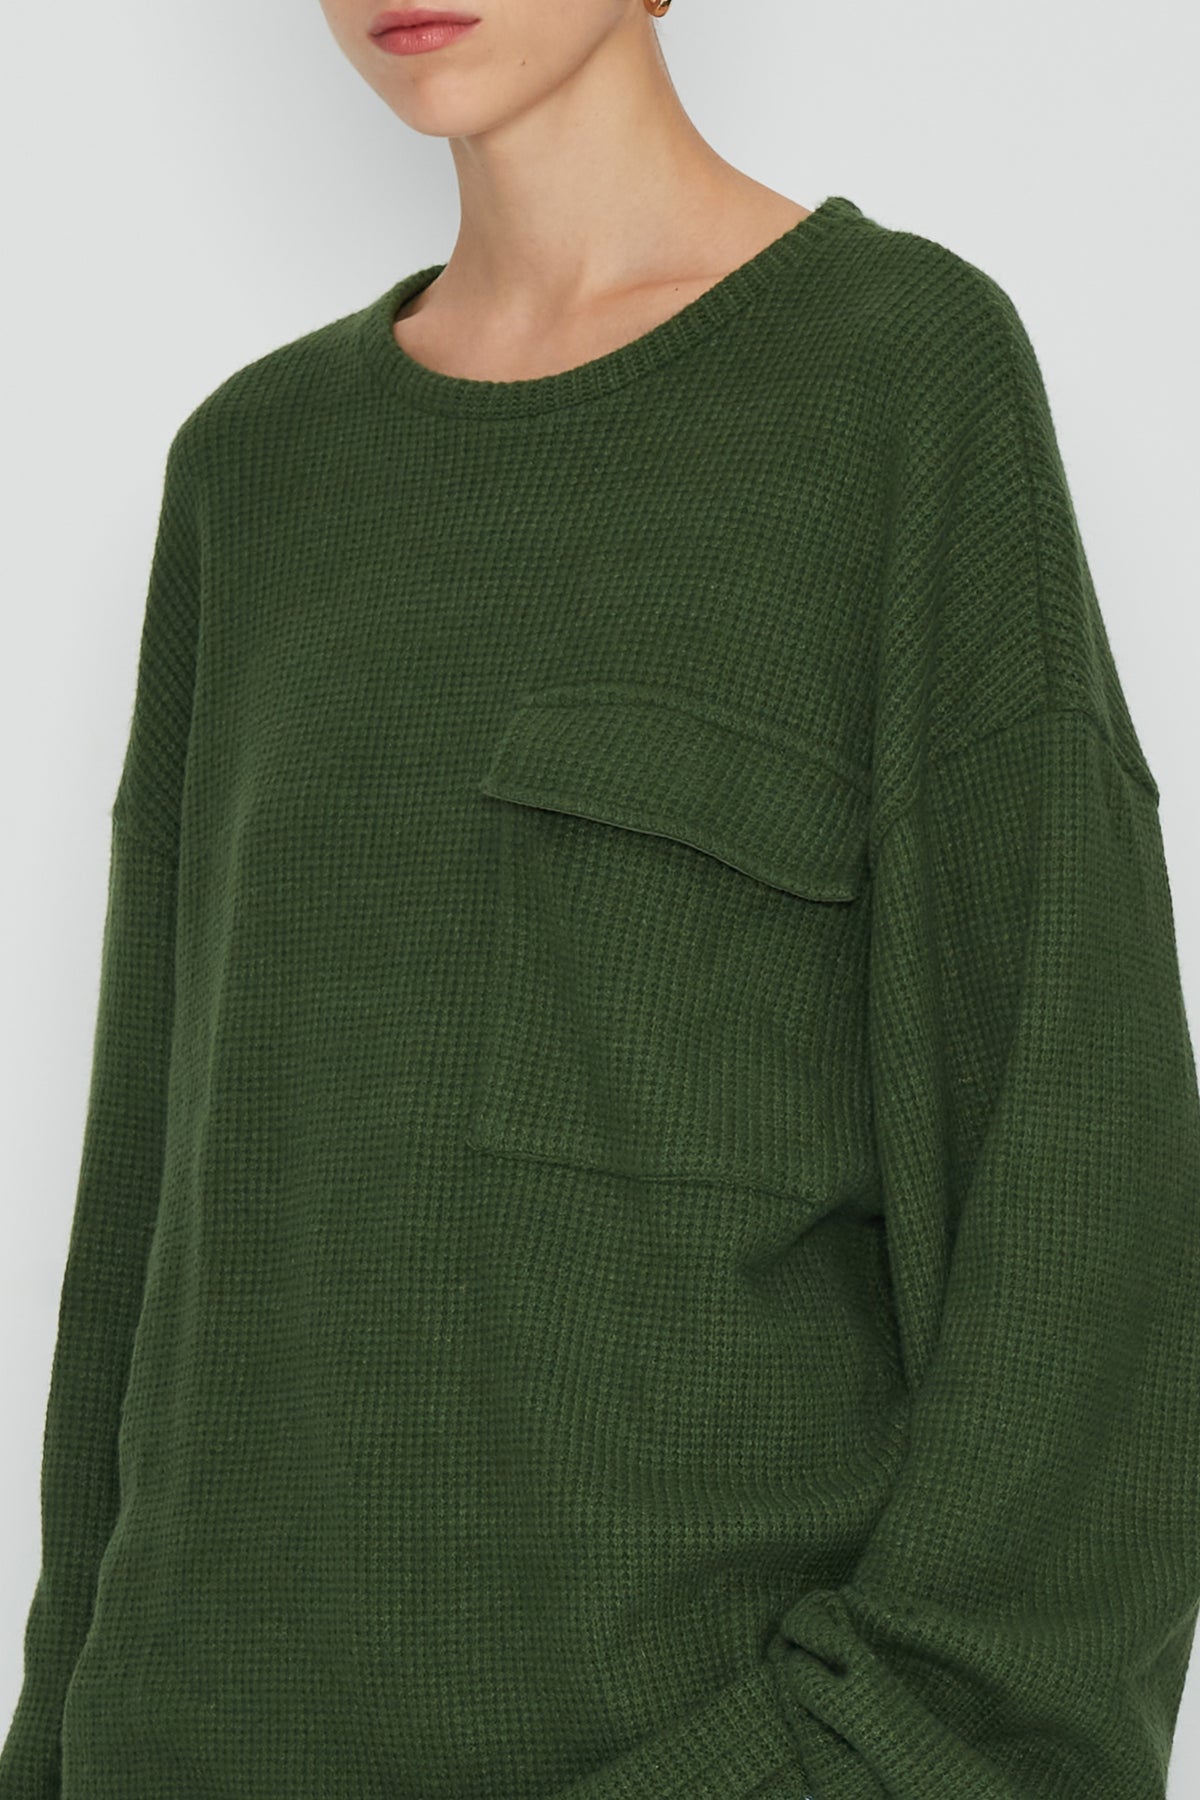 Winter Camouflage Knitwear / Green